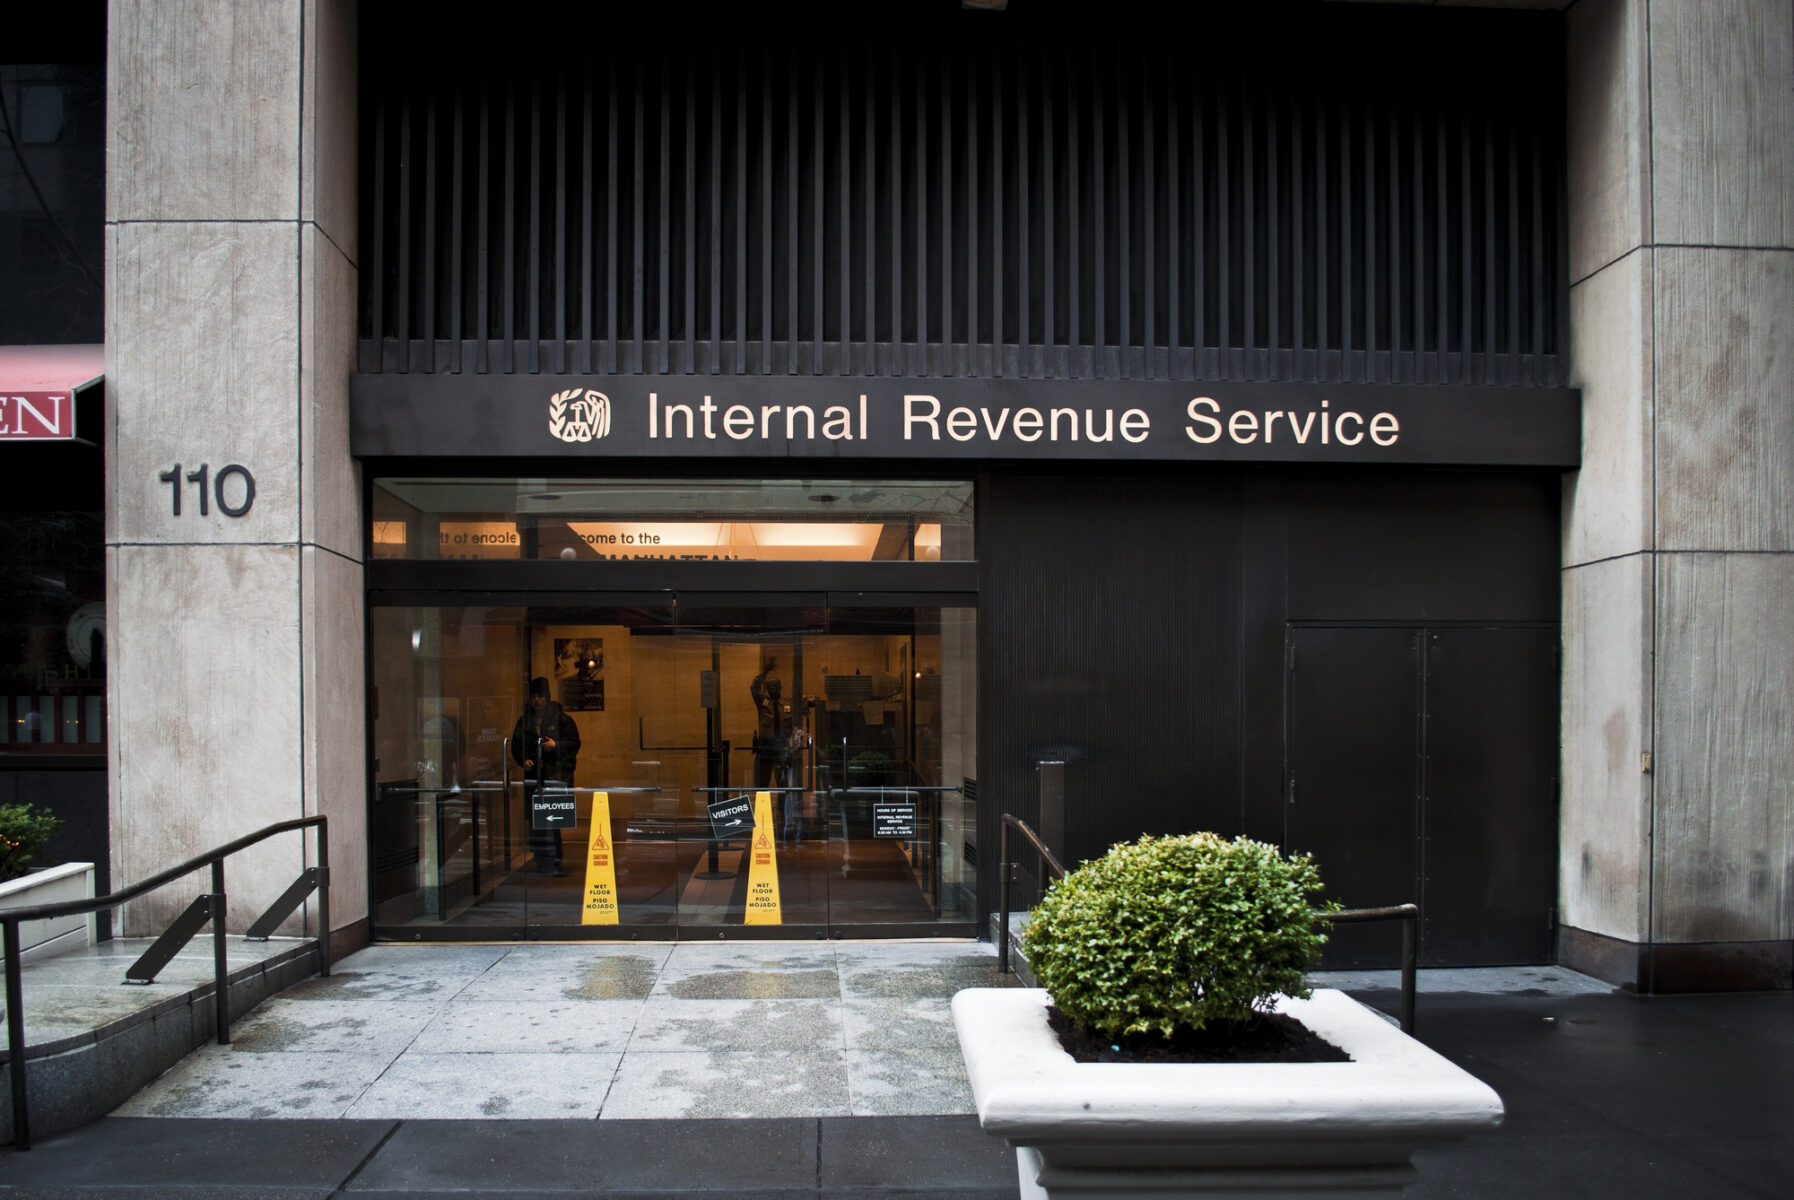 El IRS sabe que los temas que maneja son complejos y está dispuesto a dialogar | Foto: Depositphotos